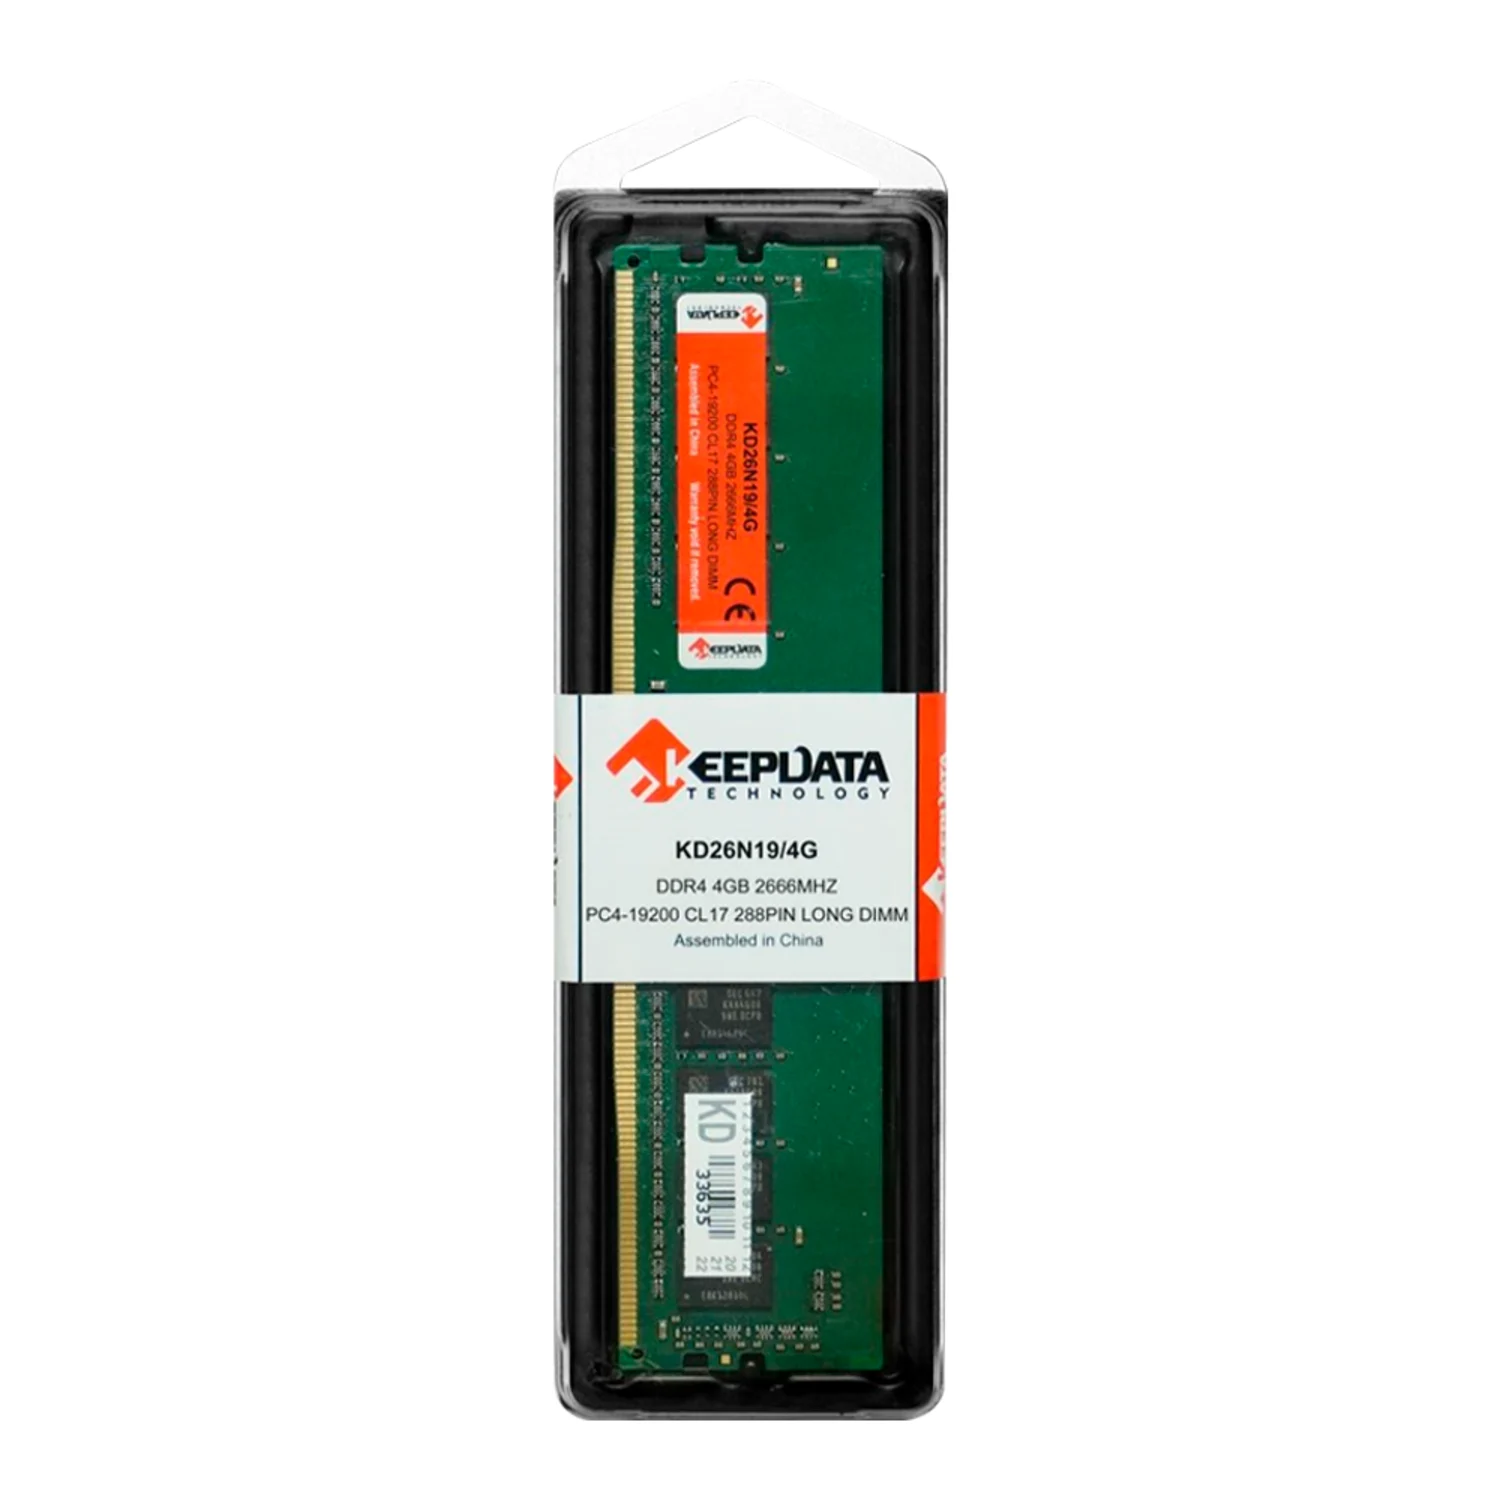 Memória RAM Keepdata 4GB / DDR4 / 1x4GB / 2666MHz - (KD26N19/4G)